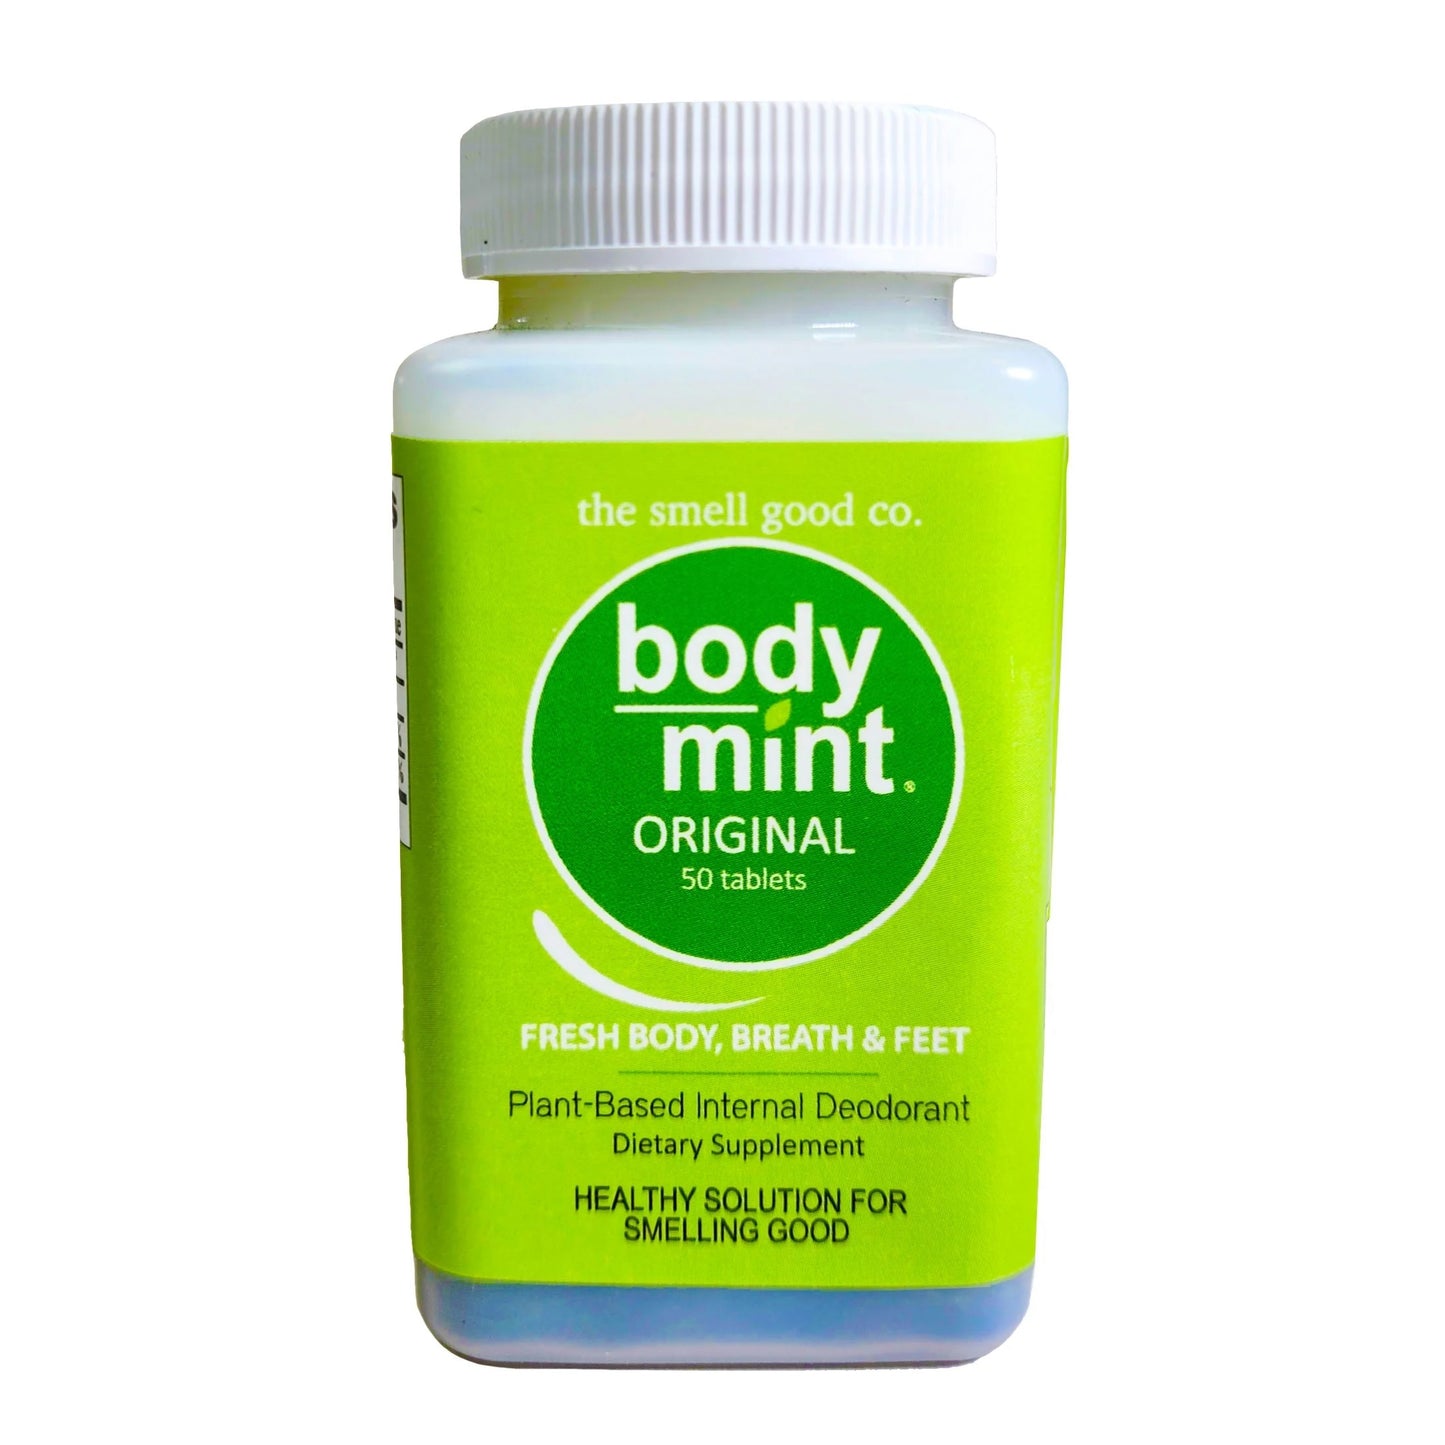 Desodorante Interno Body Mint Original 50 Pastillas - Previene el Mal Olor Corporal (bromhidrosis) y Mal Aliento (halitosis)